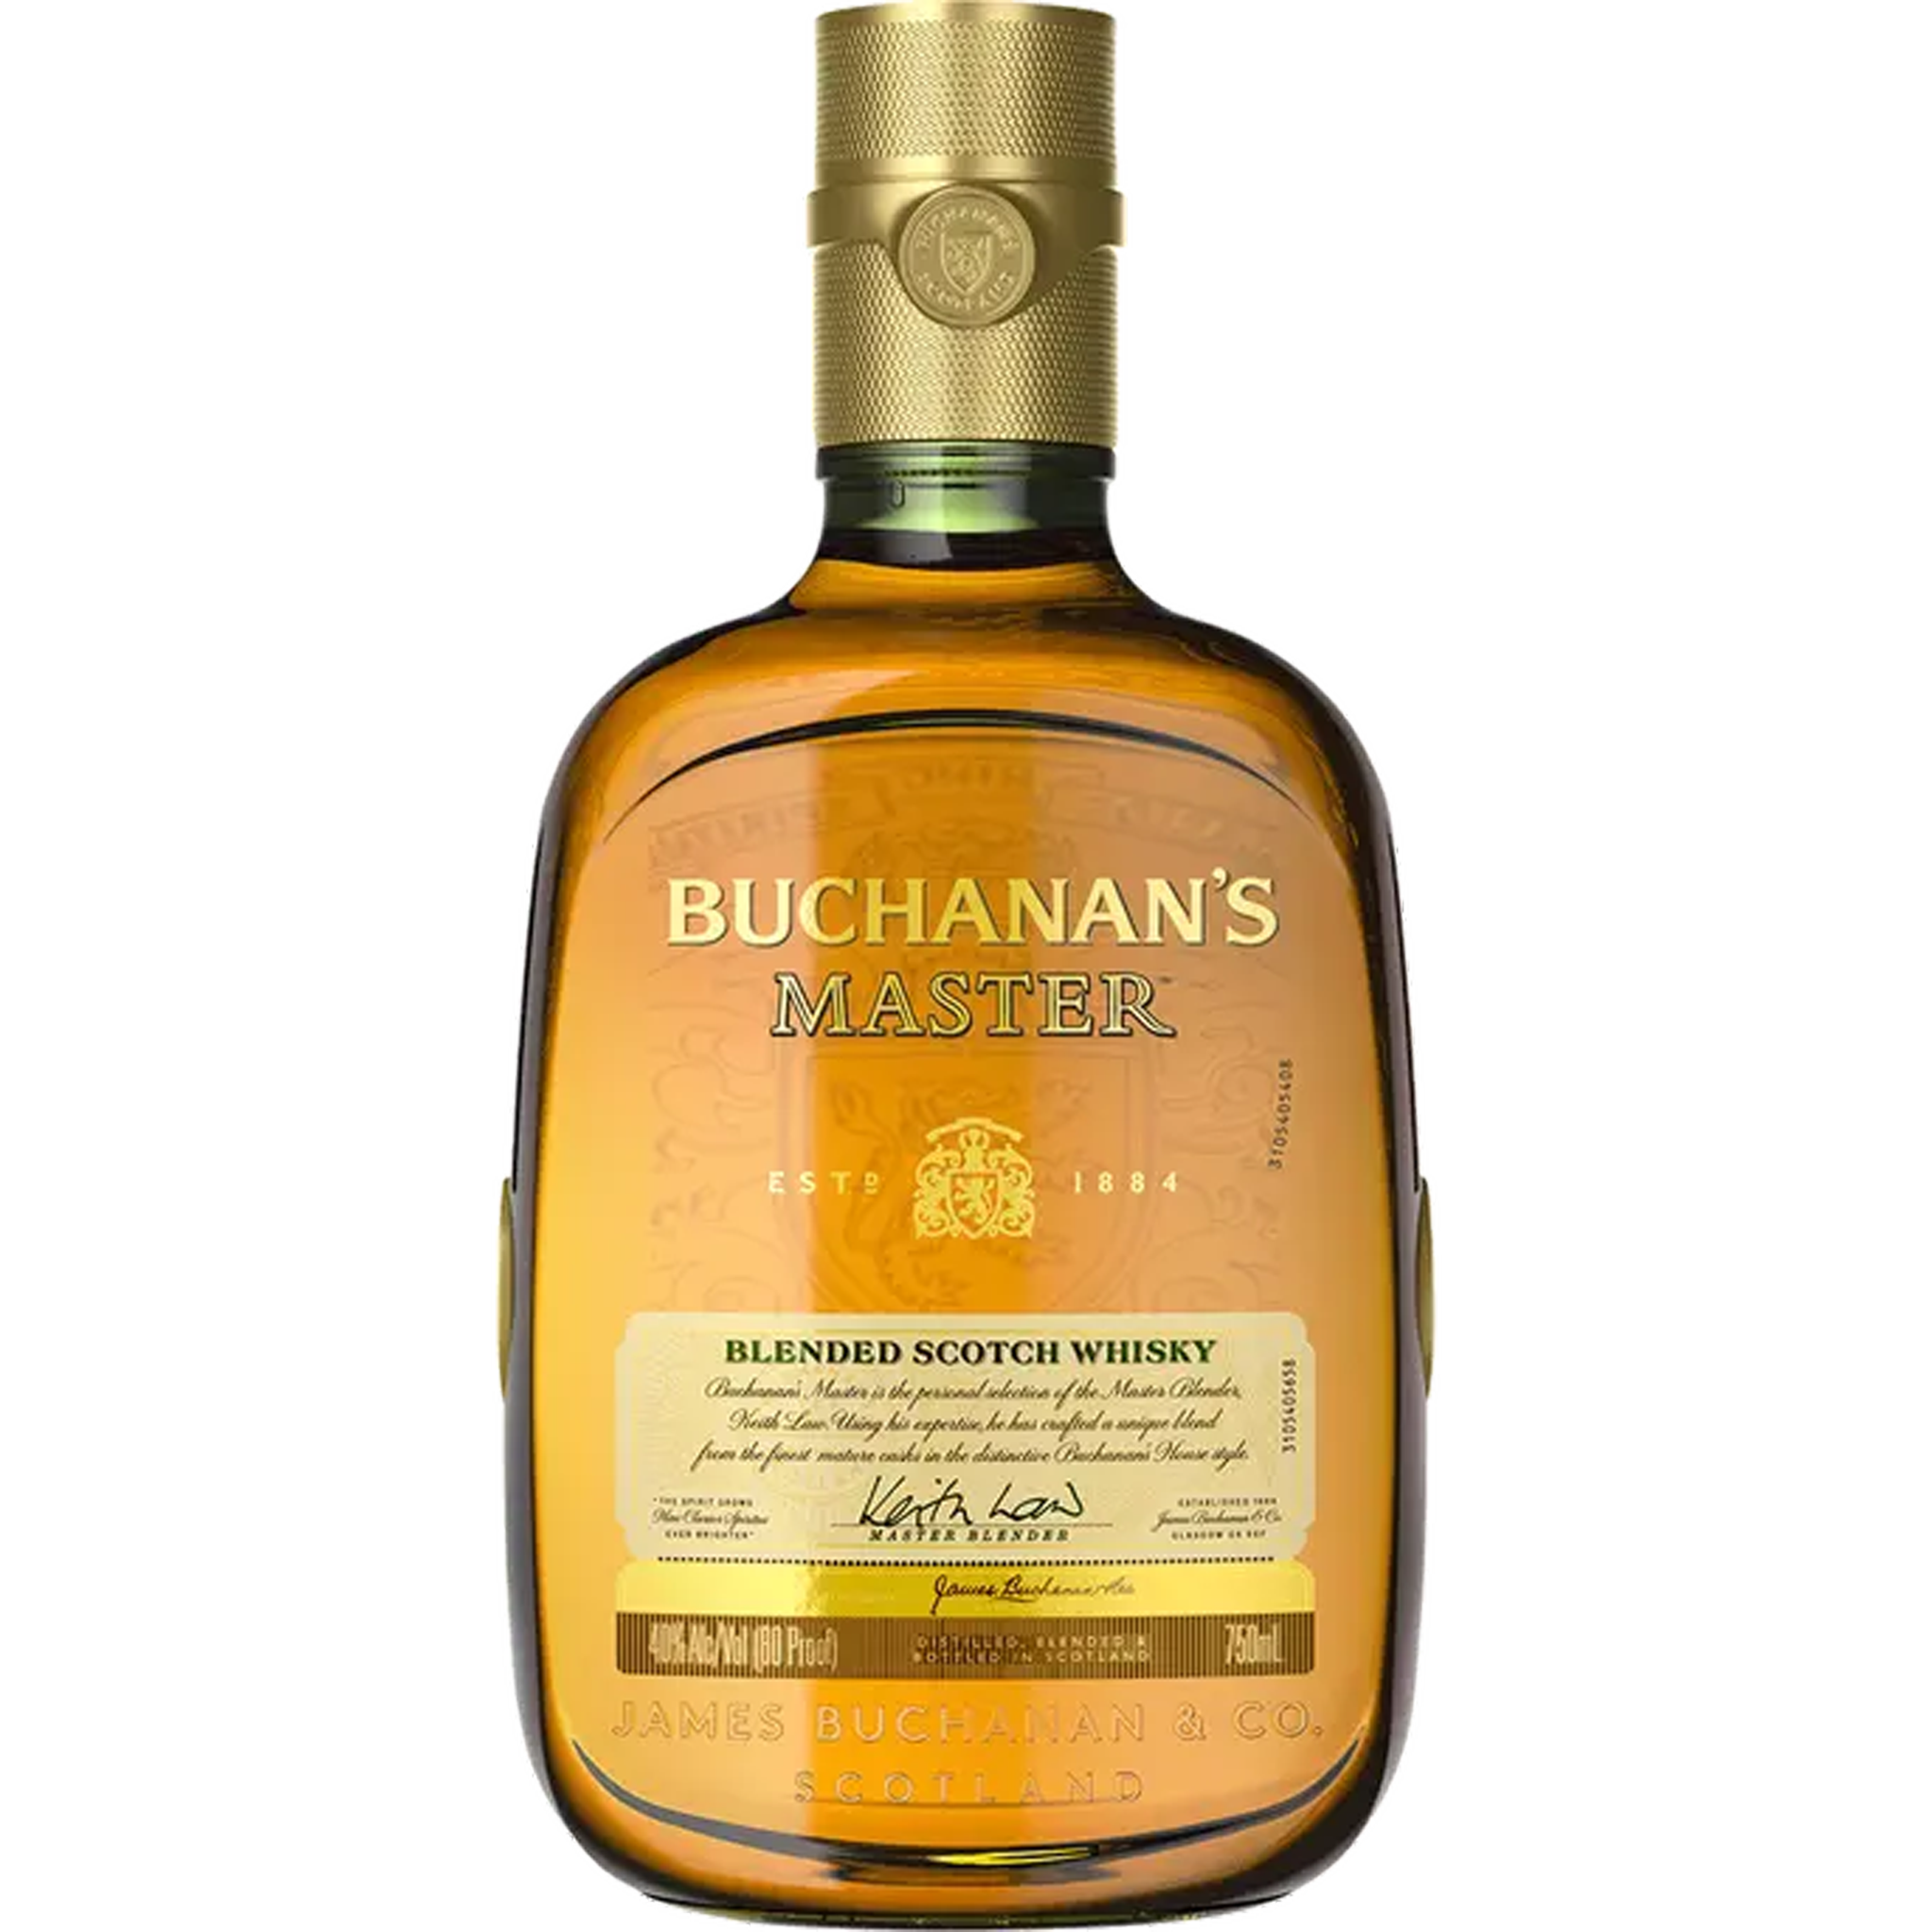 Buchanan's Master Blend Scotch